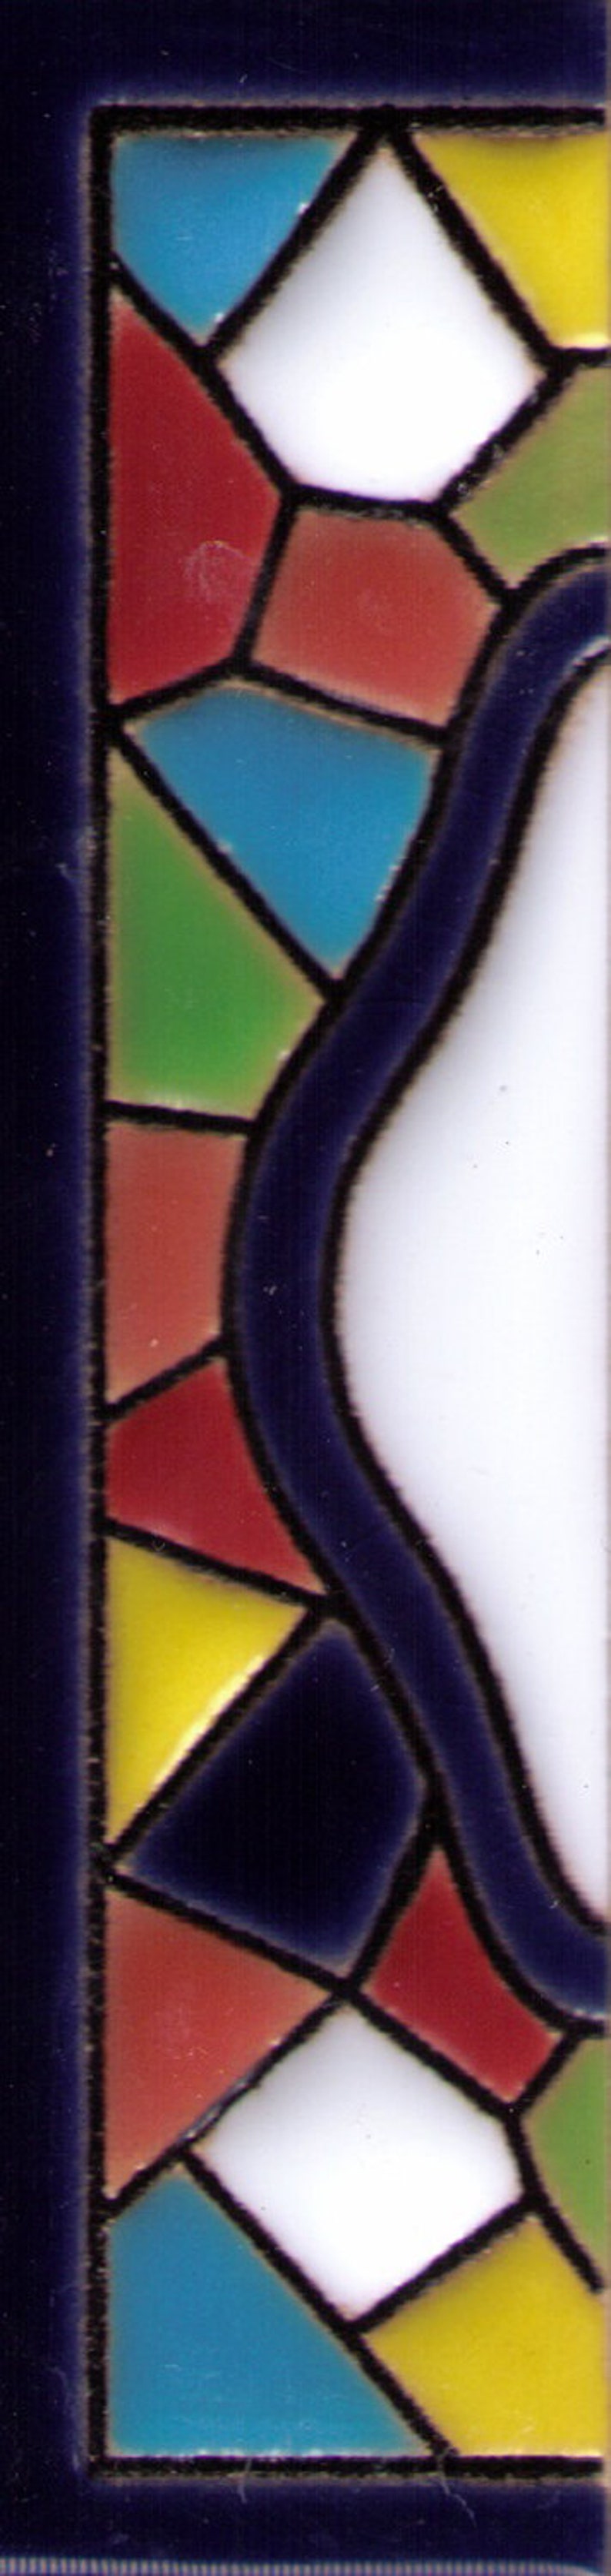 Adressschild, Hausnummer, Namensschild, Keramikbuchstabe GAUDI Keramik bunt Namen Fliese A _ Z Bild 5